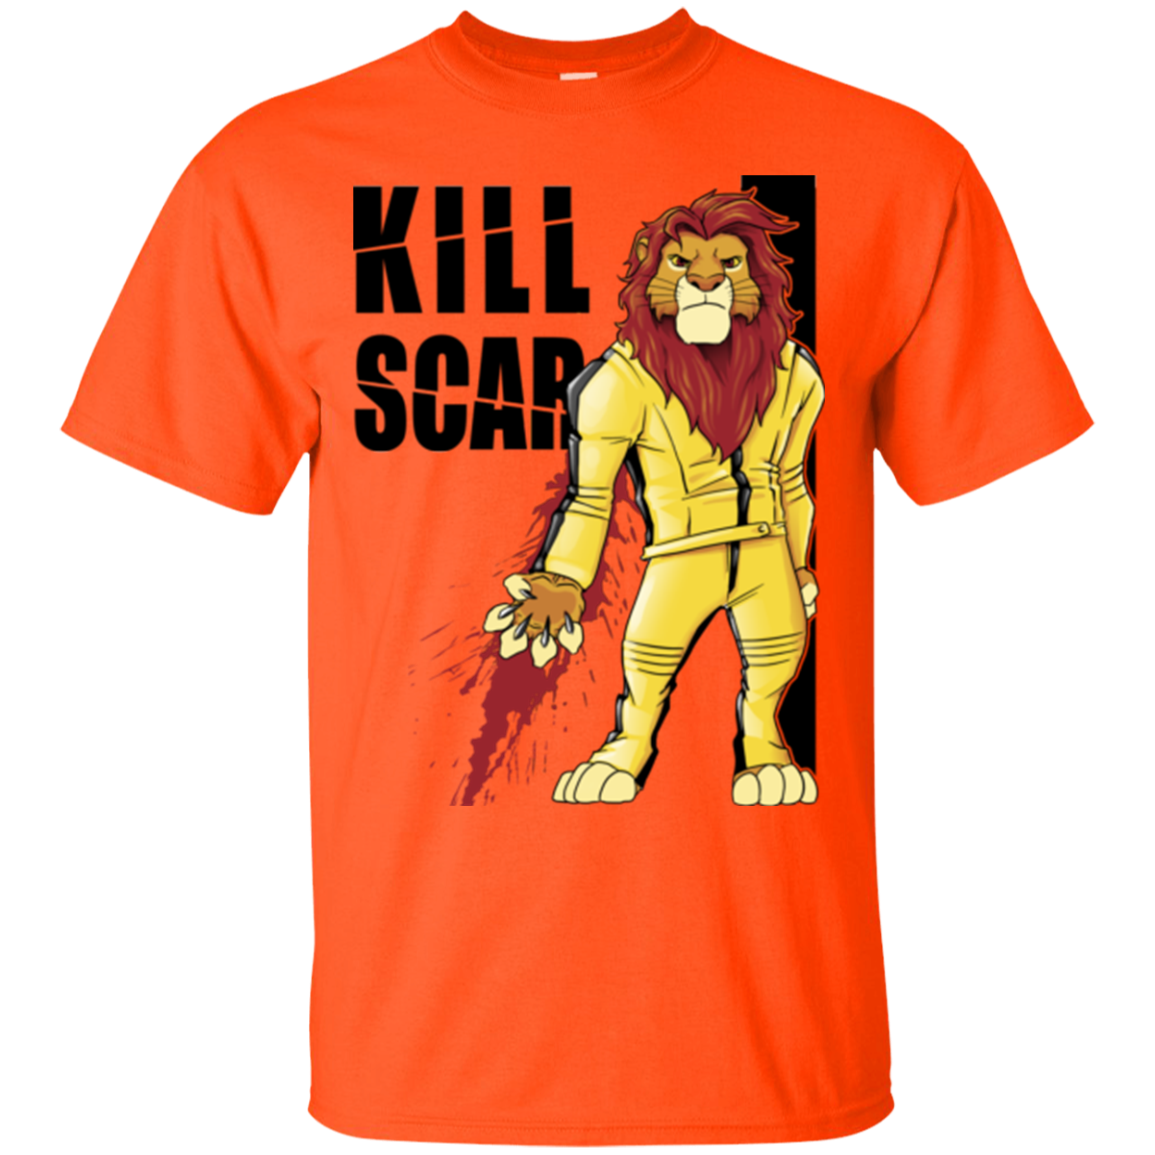 Kill Scar T-Shirt